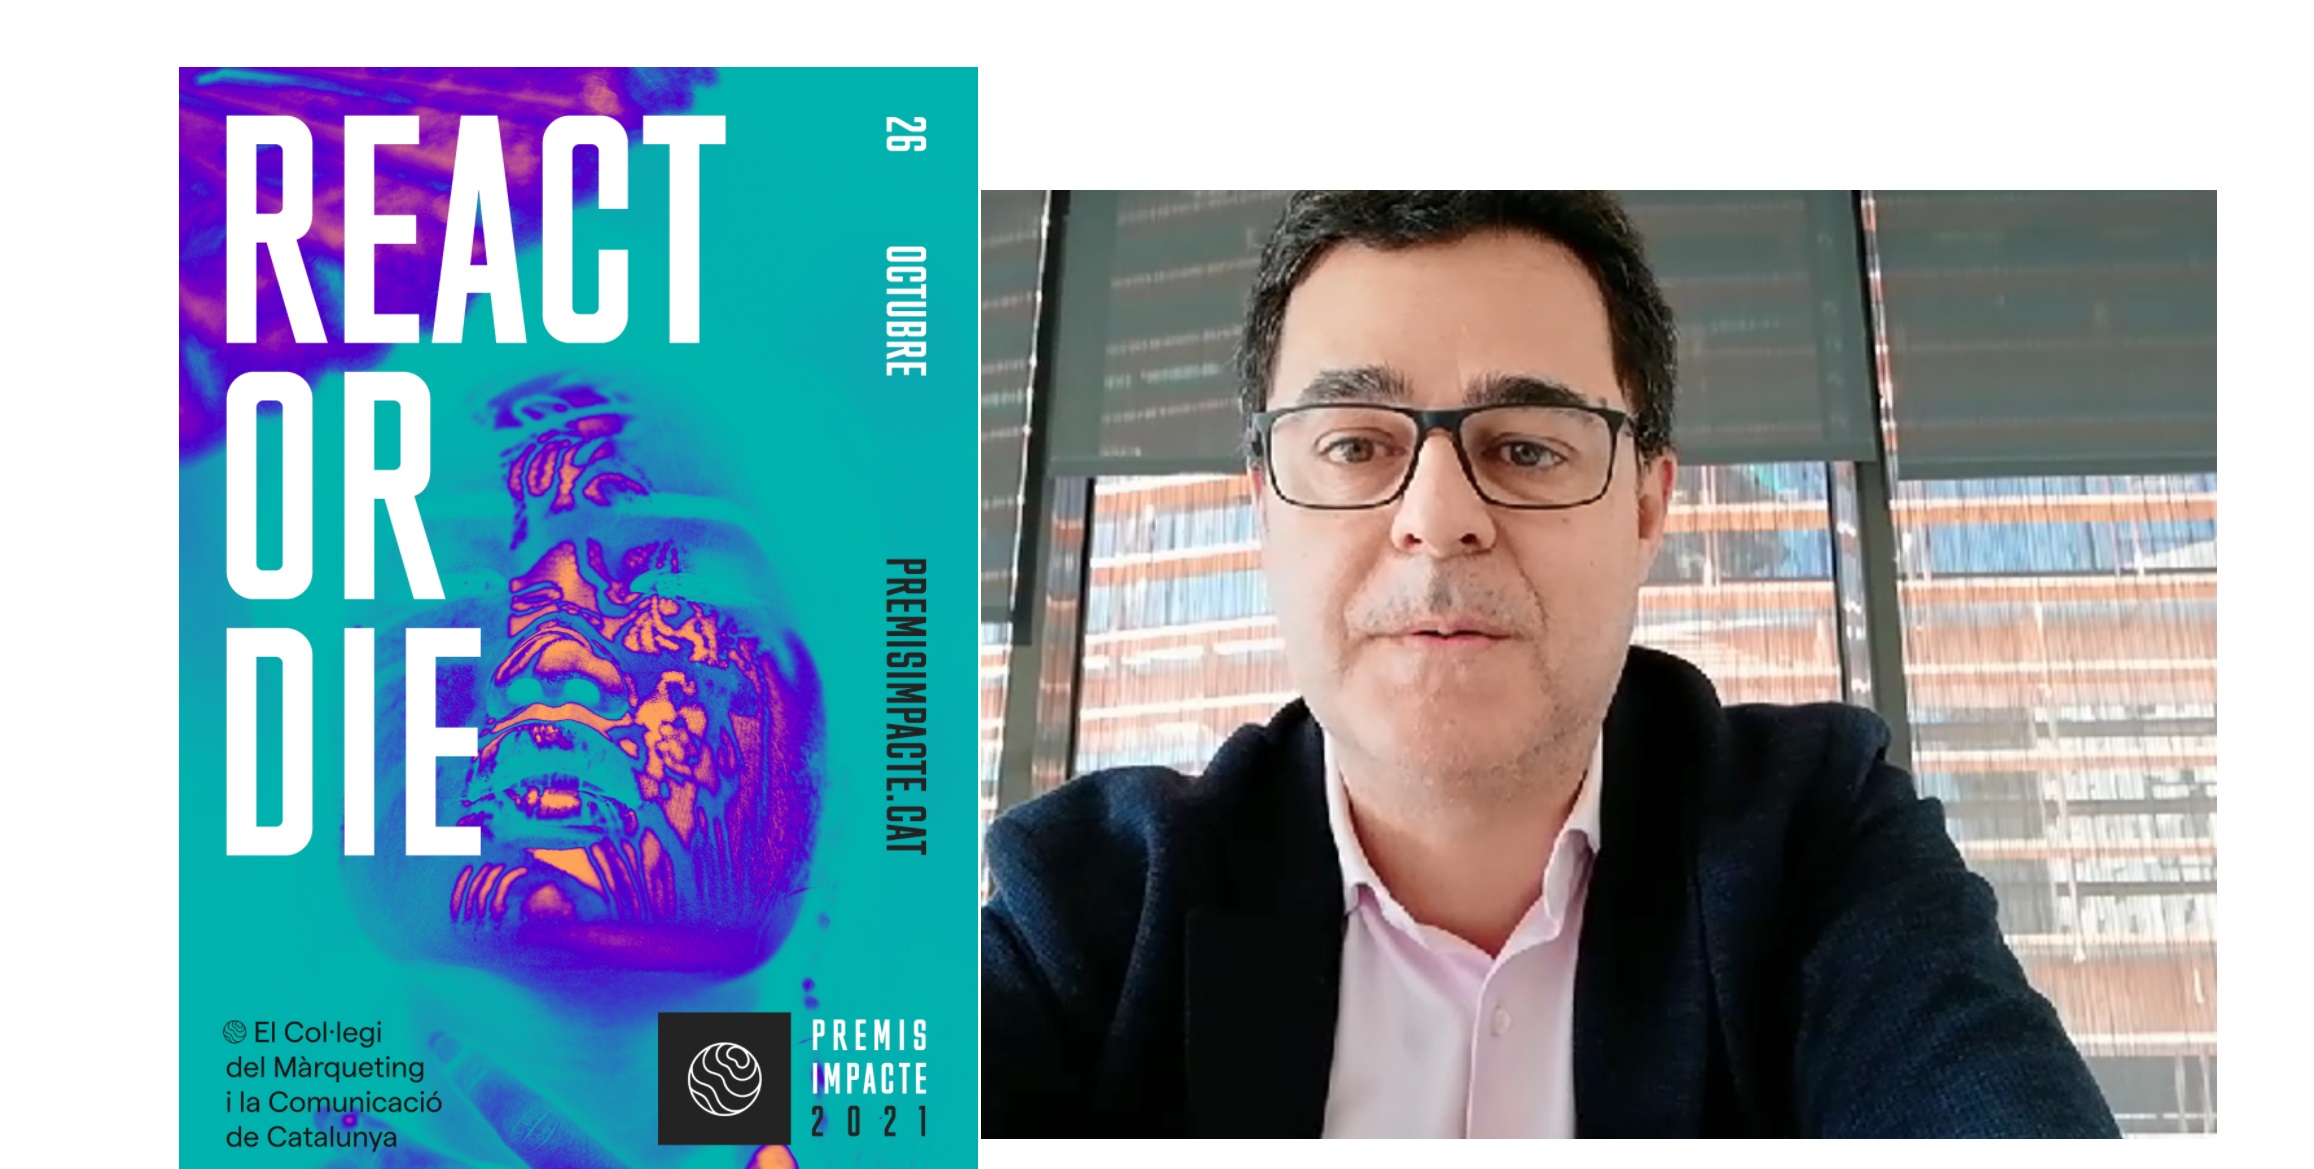 Miquel Campmany, Comunicación ,Marketing de Nestlé, director ,Premis Impacte 2021, programapublicidad